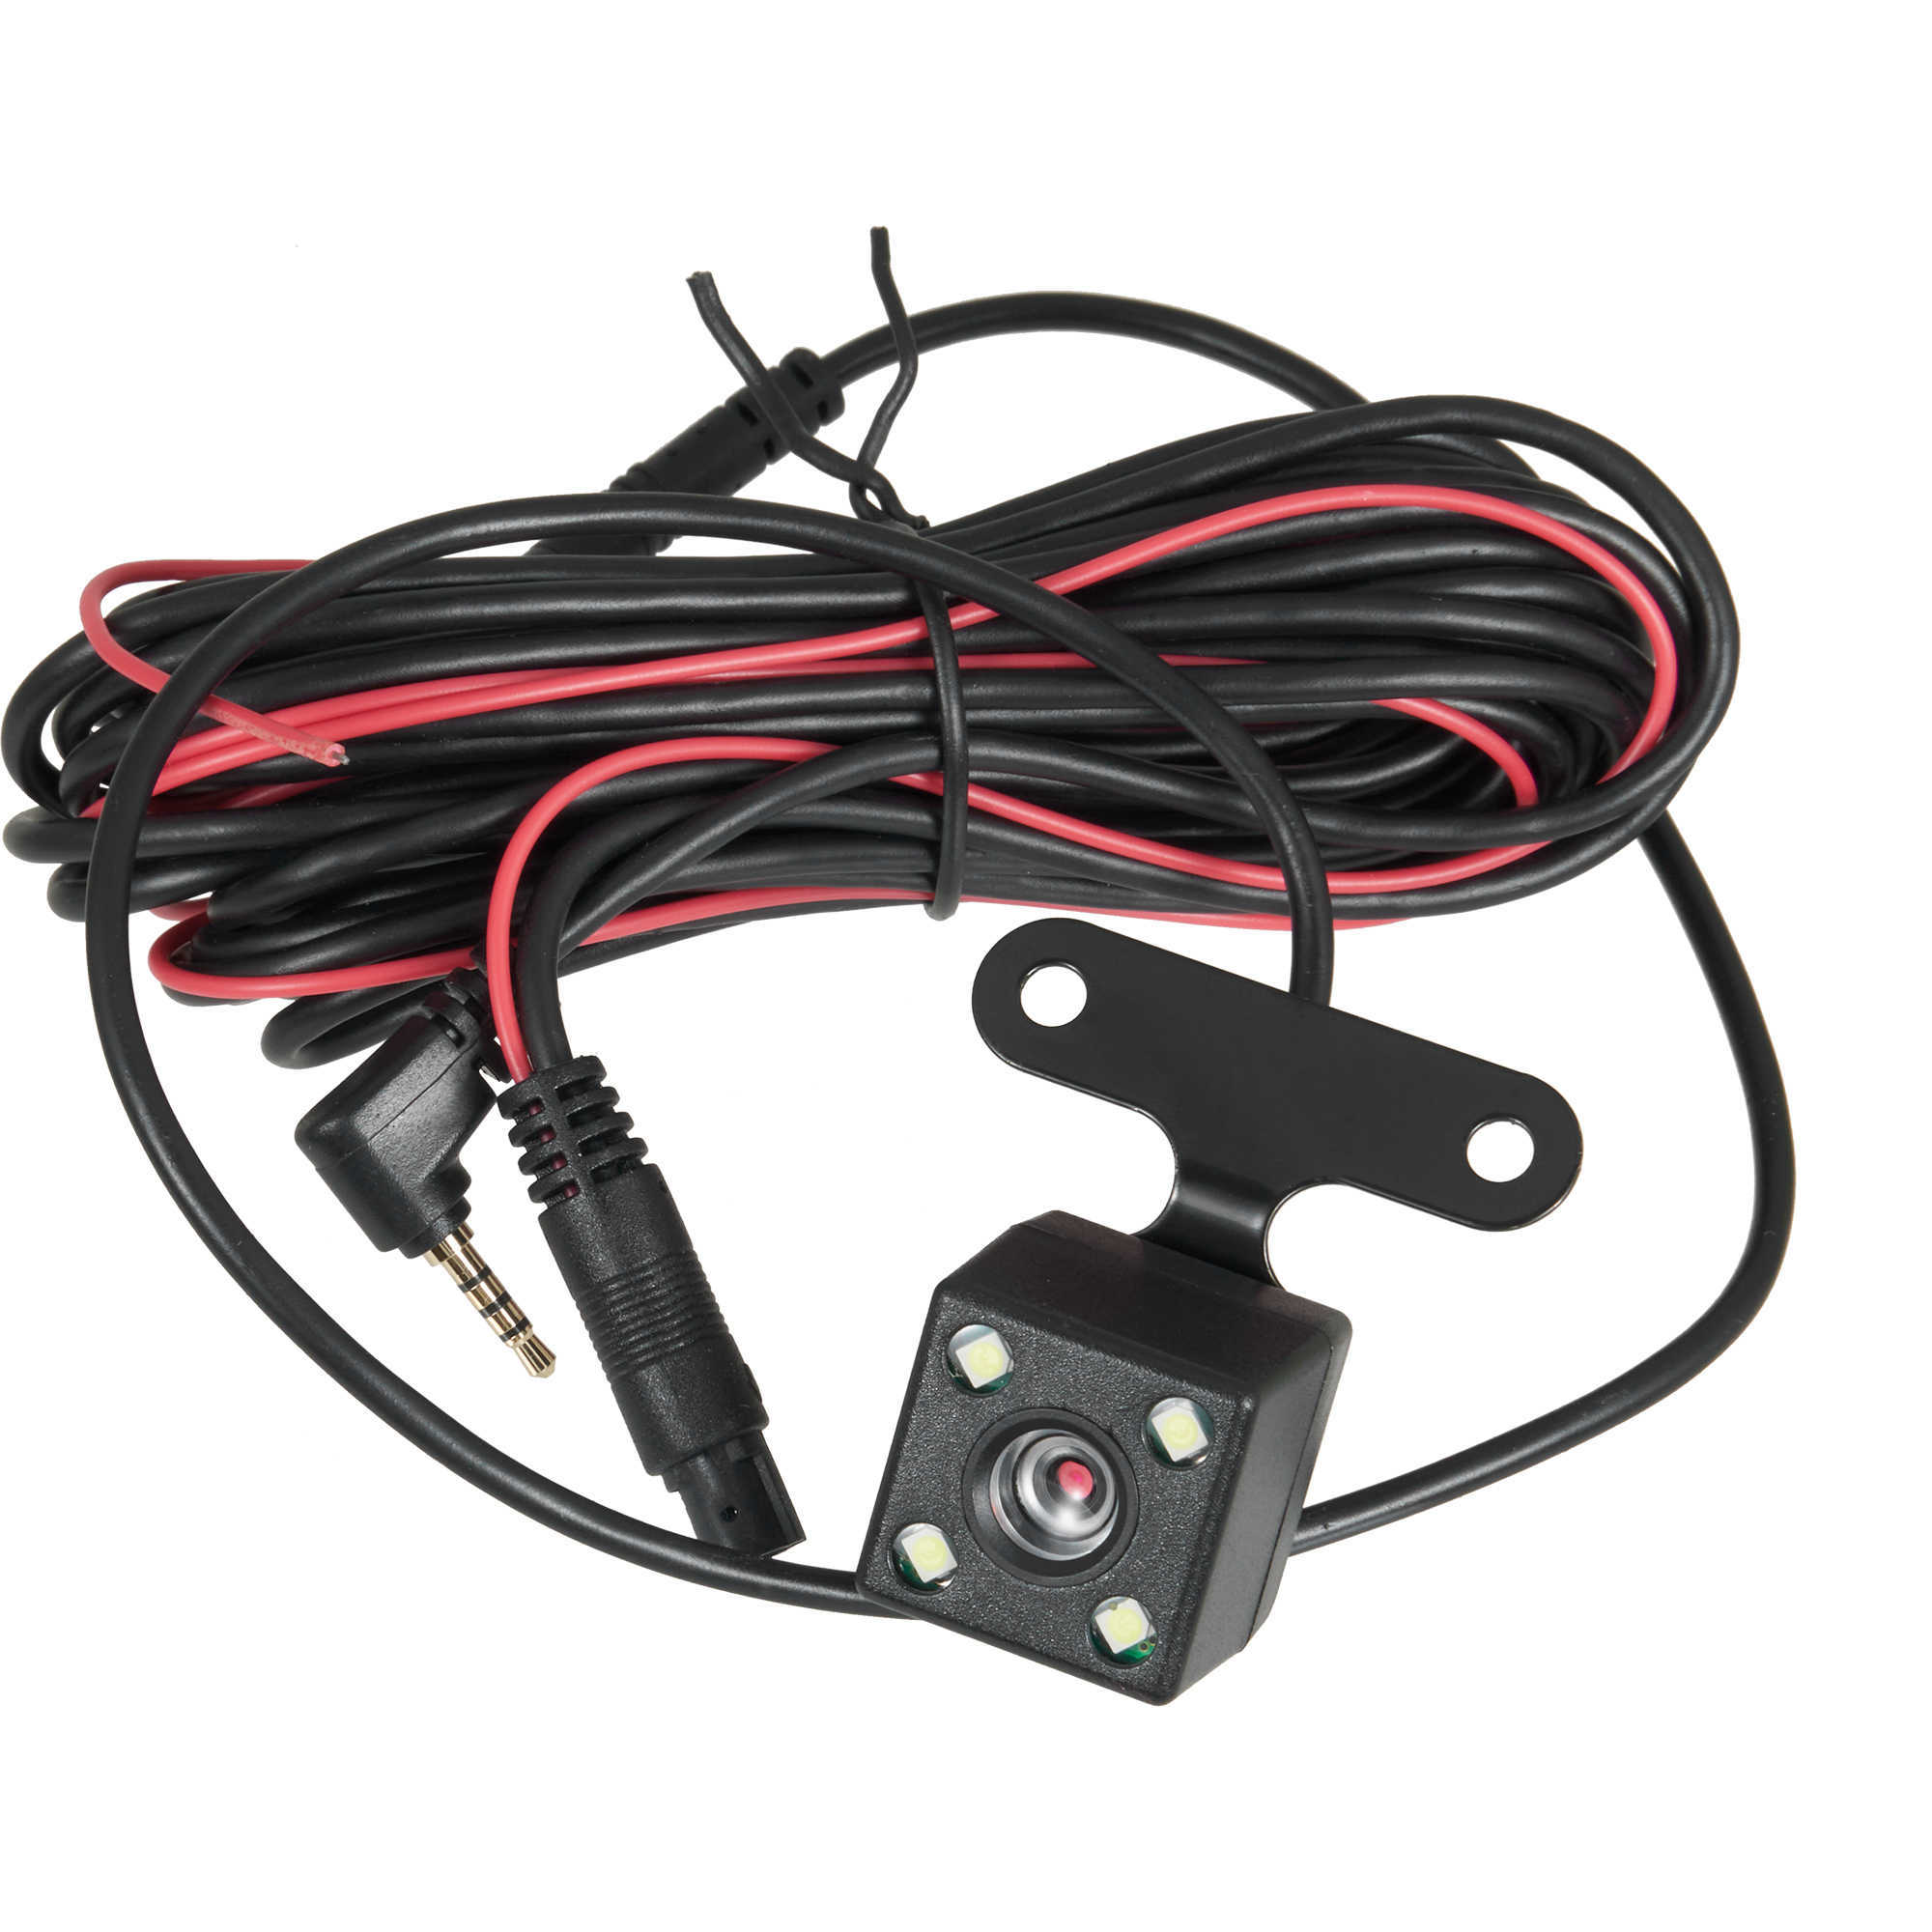 Atualizar 5 Pin HD Car Câmera traseira de vista reversa 4Led Night Vidion Video Camera angular de 170 graus Câmera de estacionamento para acessórios para carro DVR DVR